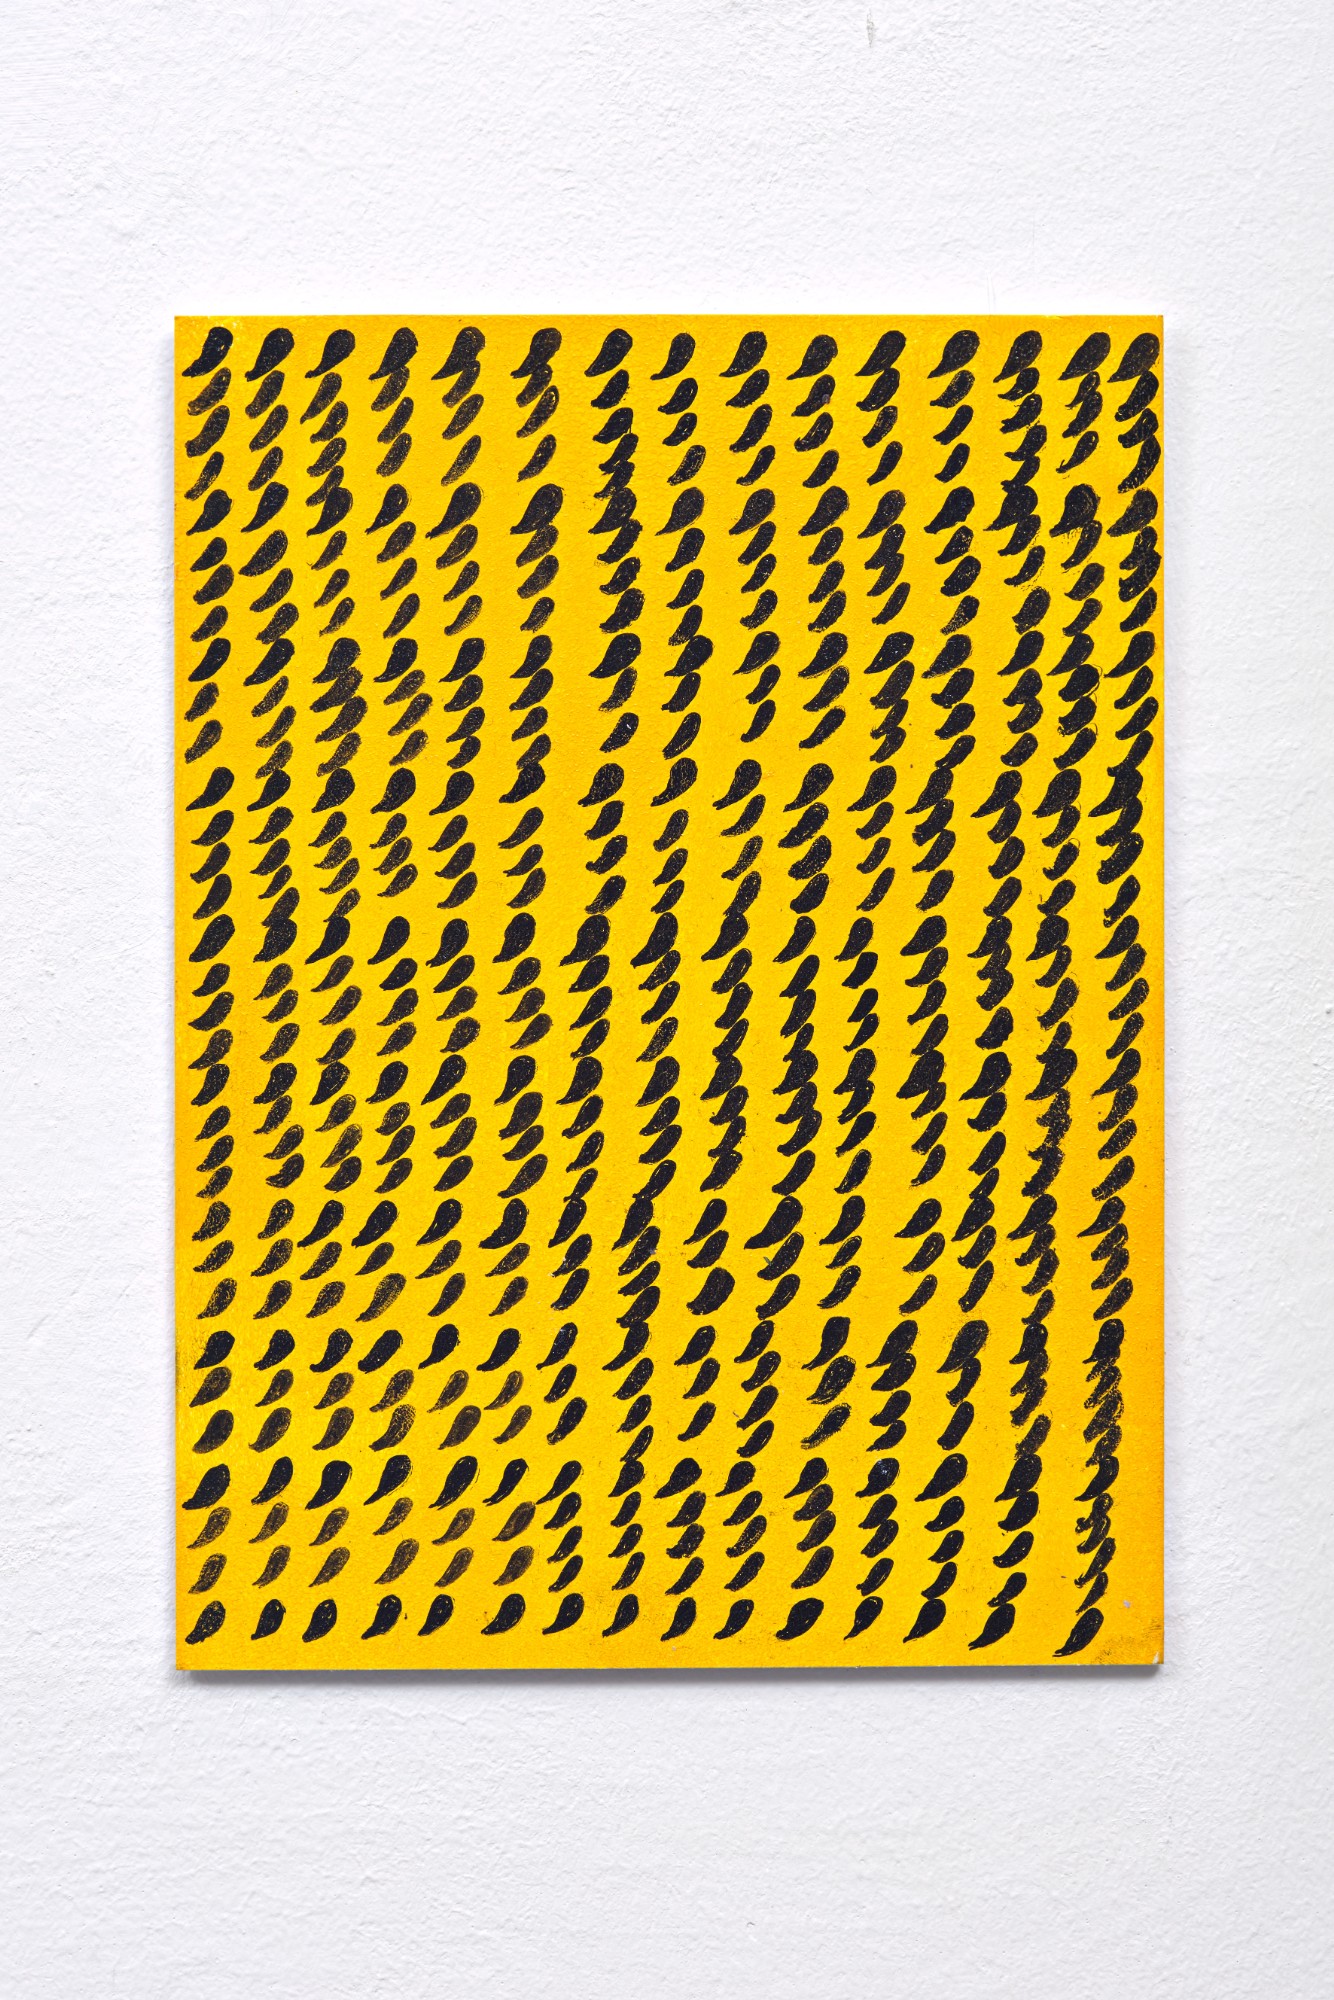 Ulrich Wulff, Ohne Titel, 2018, ink, acrylic on board, 29,5 x 21 cm